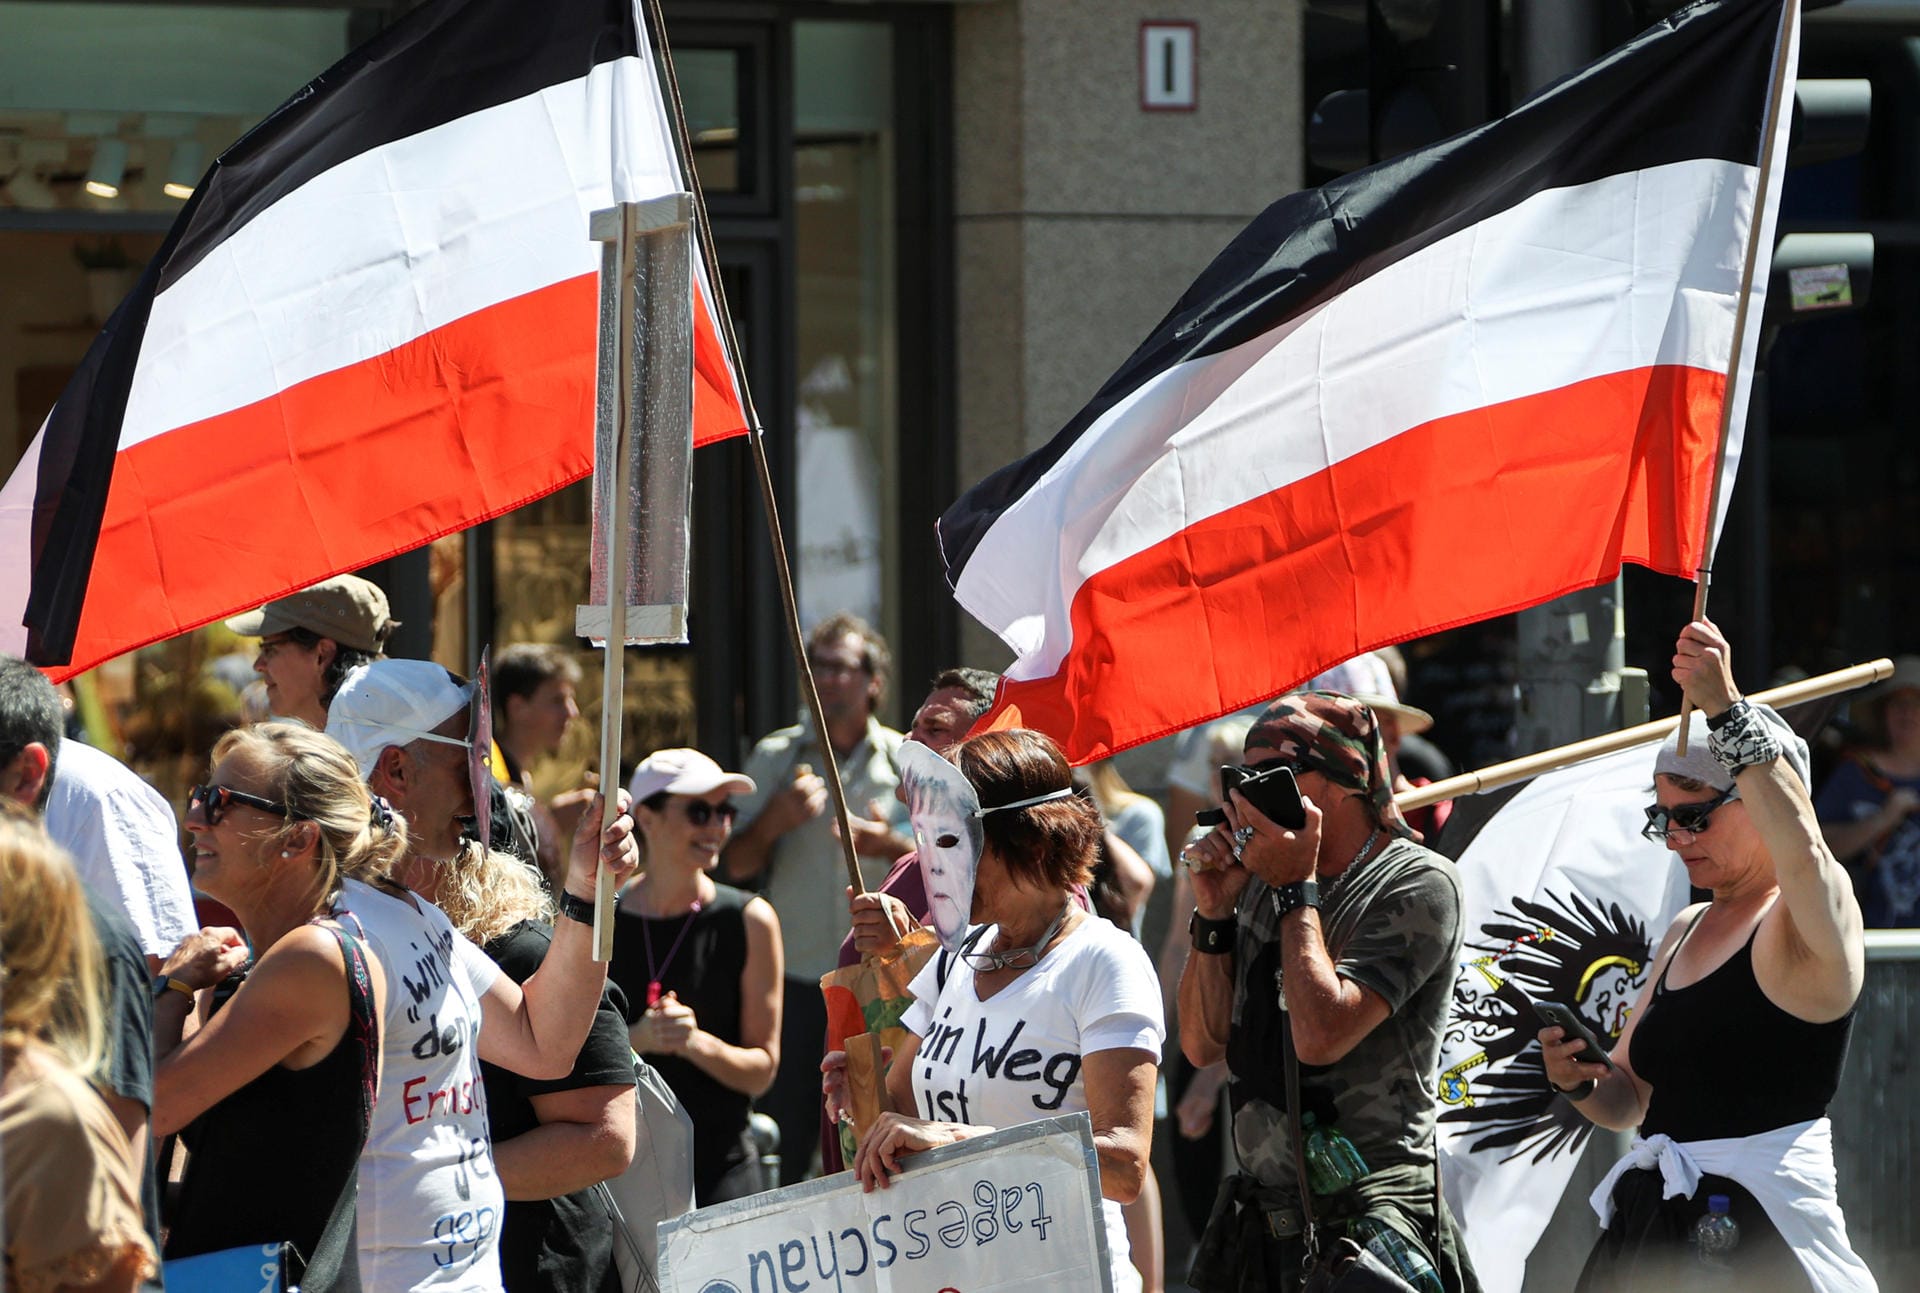 Mehrere Demonstranten sind mit Abwandlungen der Reichkriegsflagge sowie dem Wappen Preußens unterwegs. Rechtspopulisten sehen in ihnen Symbole eines angeblich verloren gegangenen unabhängigen und starken Deutschlands.